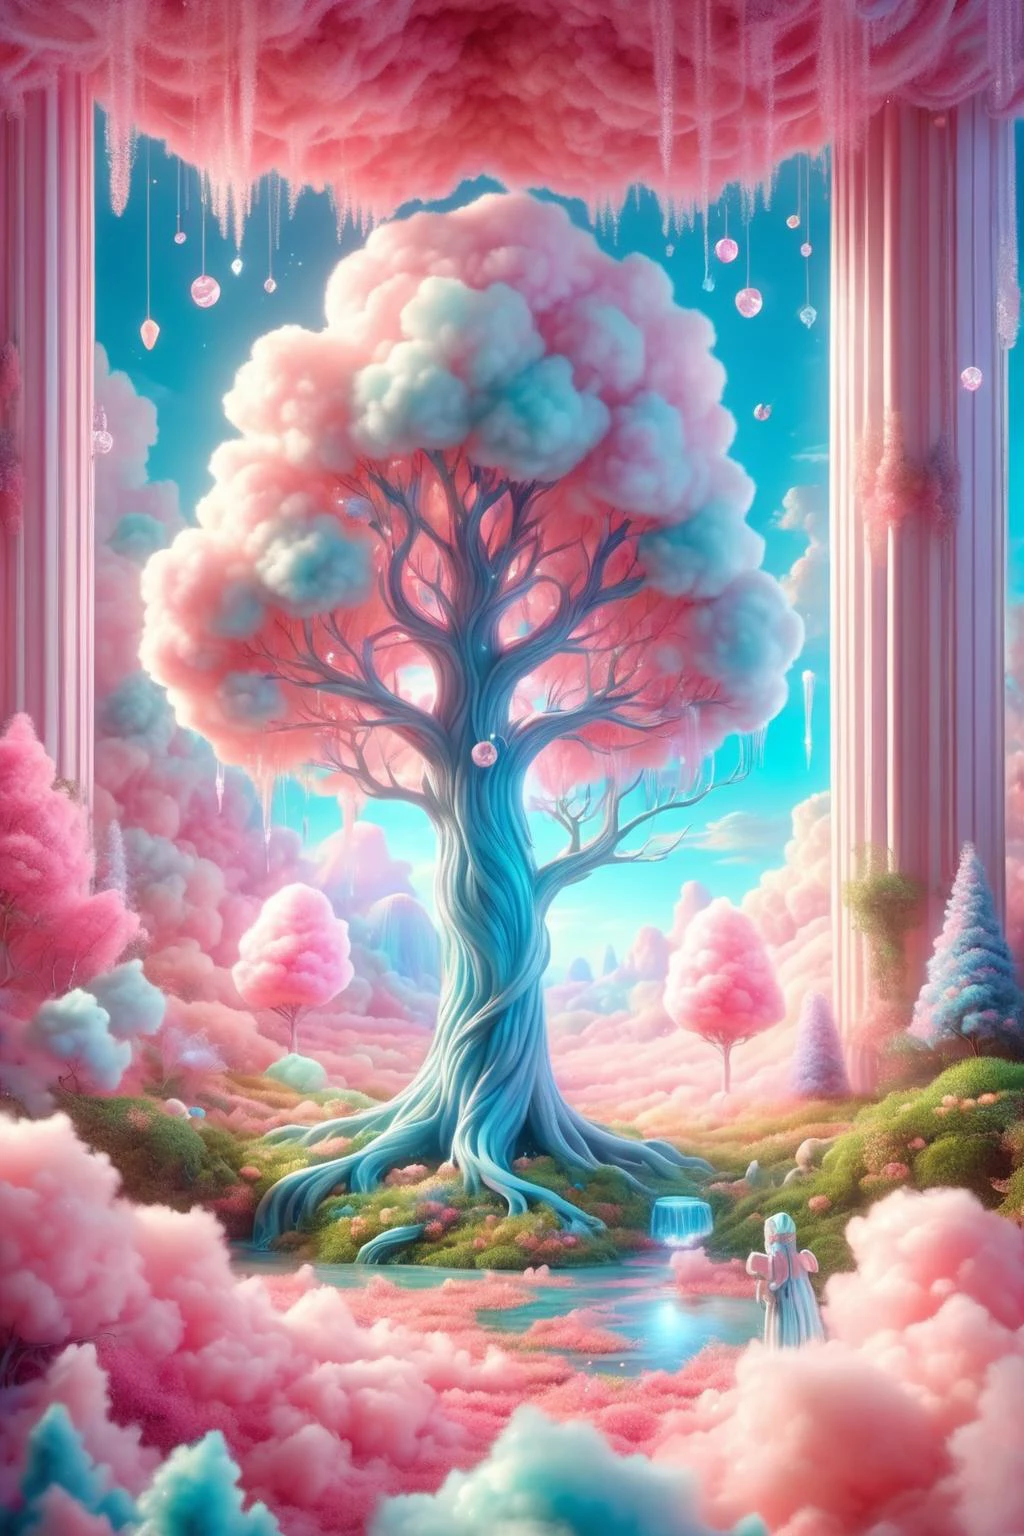 barbe à papa,
Dans un royaume onirique se dresse un arbre colossal au feuillage semblable à celui de la barbe à papa.,sous lequel existe un mini-écosystème fantaisiste. Les branches imposantes de cet arbre magique filtrent à travers des rayons de lumière éblouissants,tissant un monde enchanteur d&#39;illumination de conte de fées. Autour du grand arbre se trouvent des créatures mythiques telles que des licornes et des phénix,au milieu d&#39;un pays des merveilles où fleurissent des plantes particulières comme les vignes à bonbons et les fruits en cristal. Cette scène mélange parfaitement la nature et la fantaisie,ressemblant à une peinture fantastique tirée de rêves,
UHD,détail extrême,Lumière naturelle,voyant de volume,fantasme,Couleur professionnelle,Composition professionnelle,Coloré,